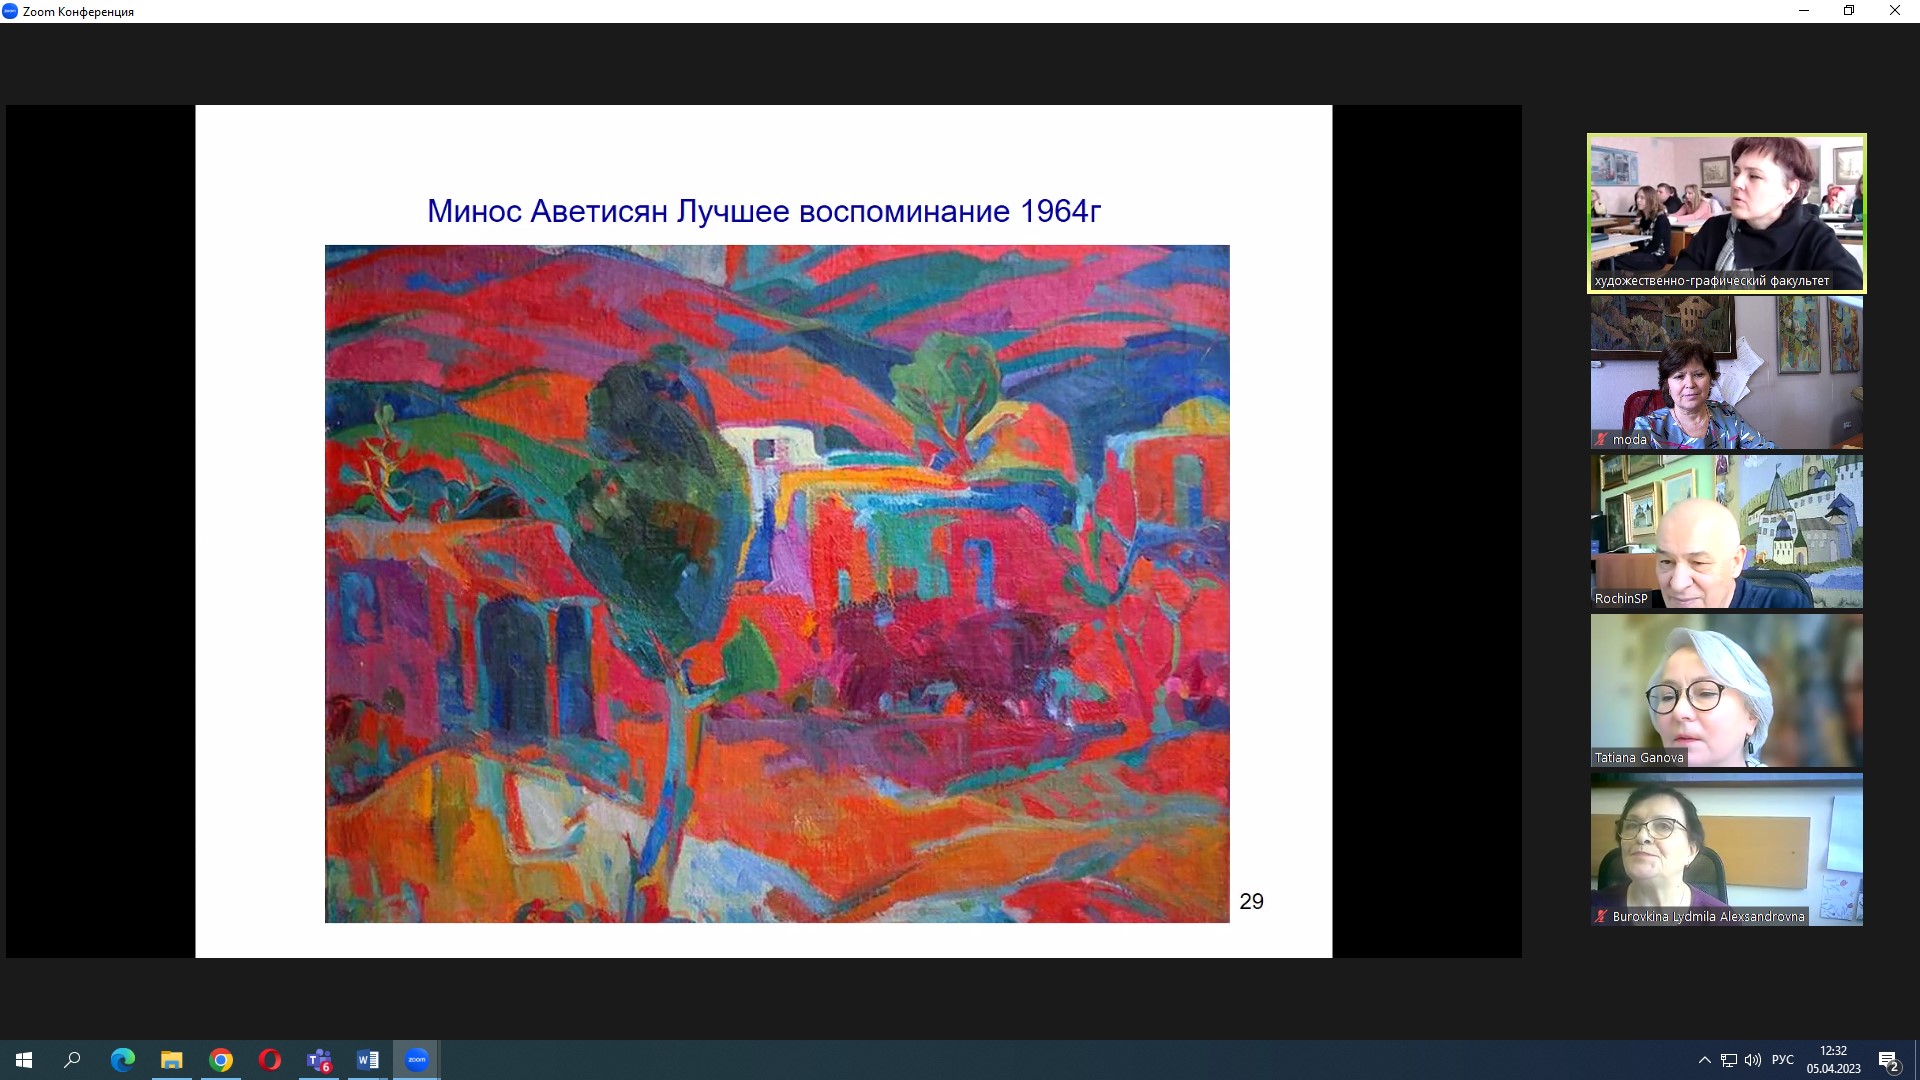 Москва-Витебск: лекция Сергея Рощина о практическом цветоведении в живописи